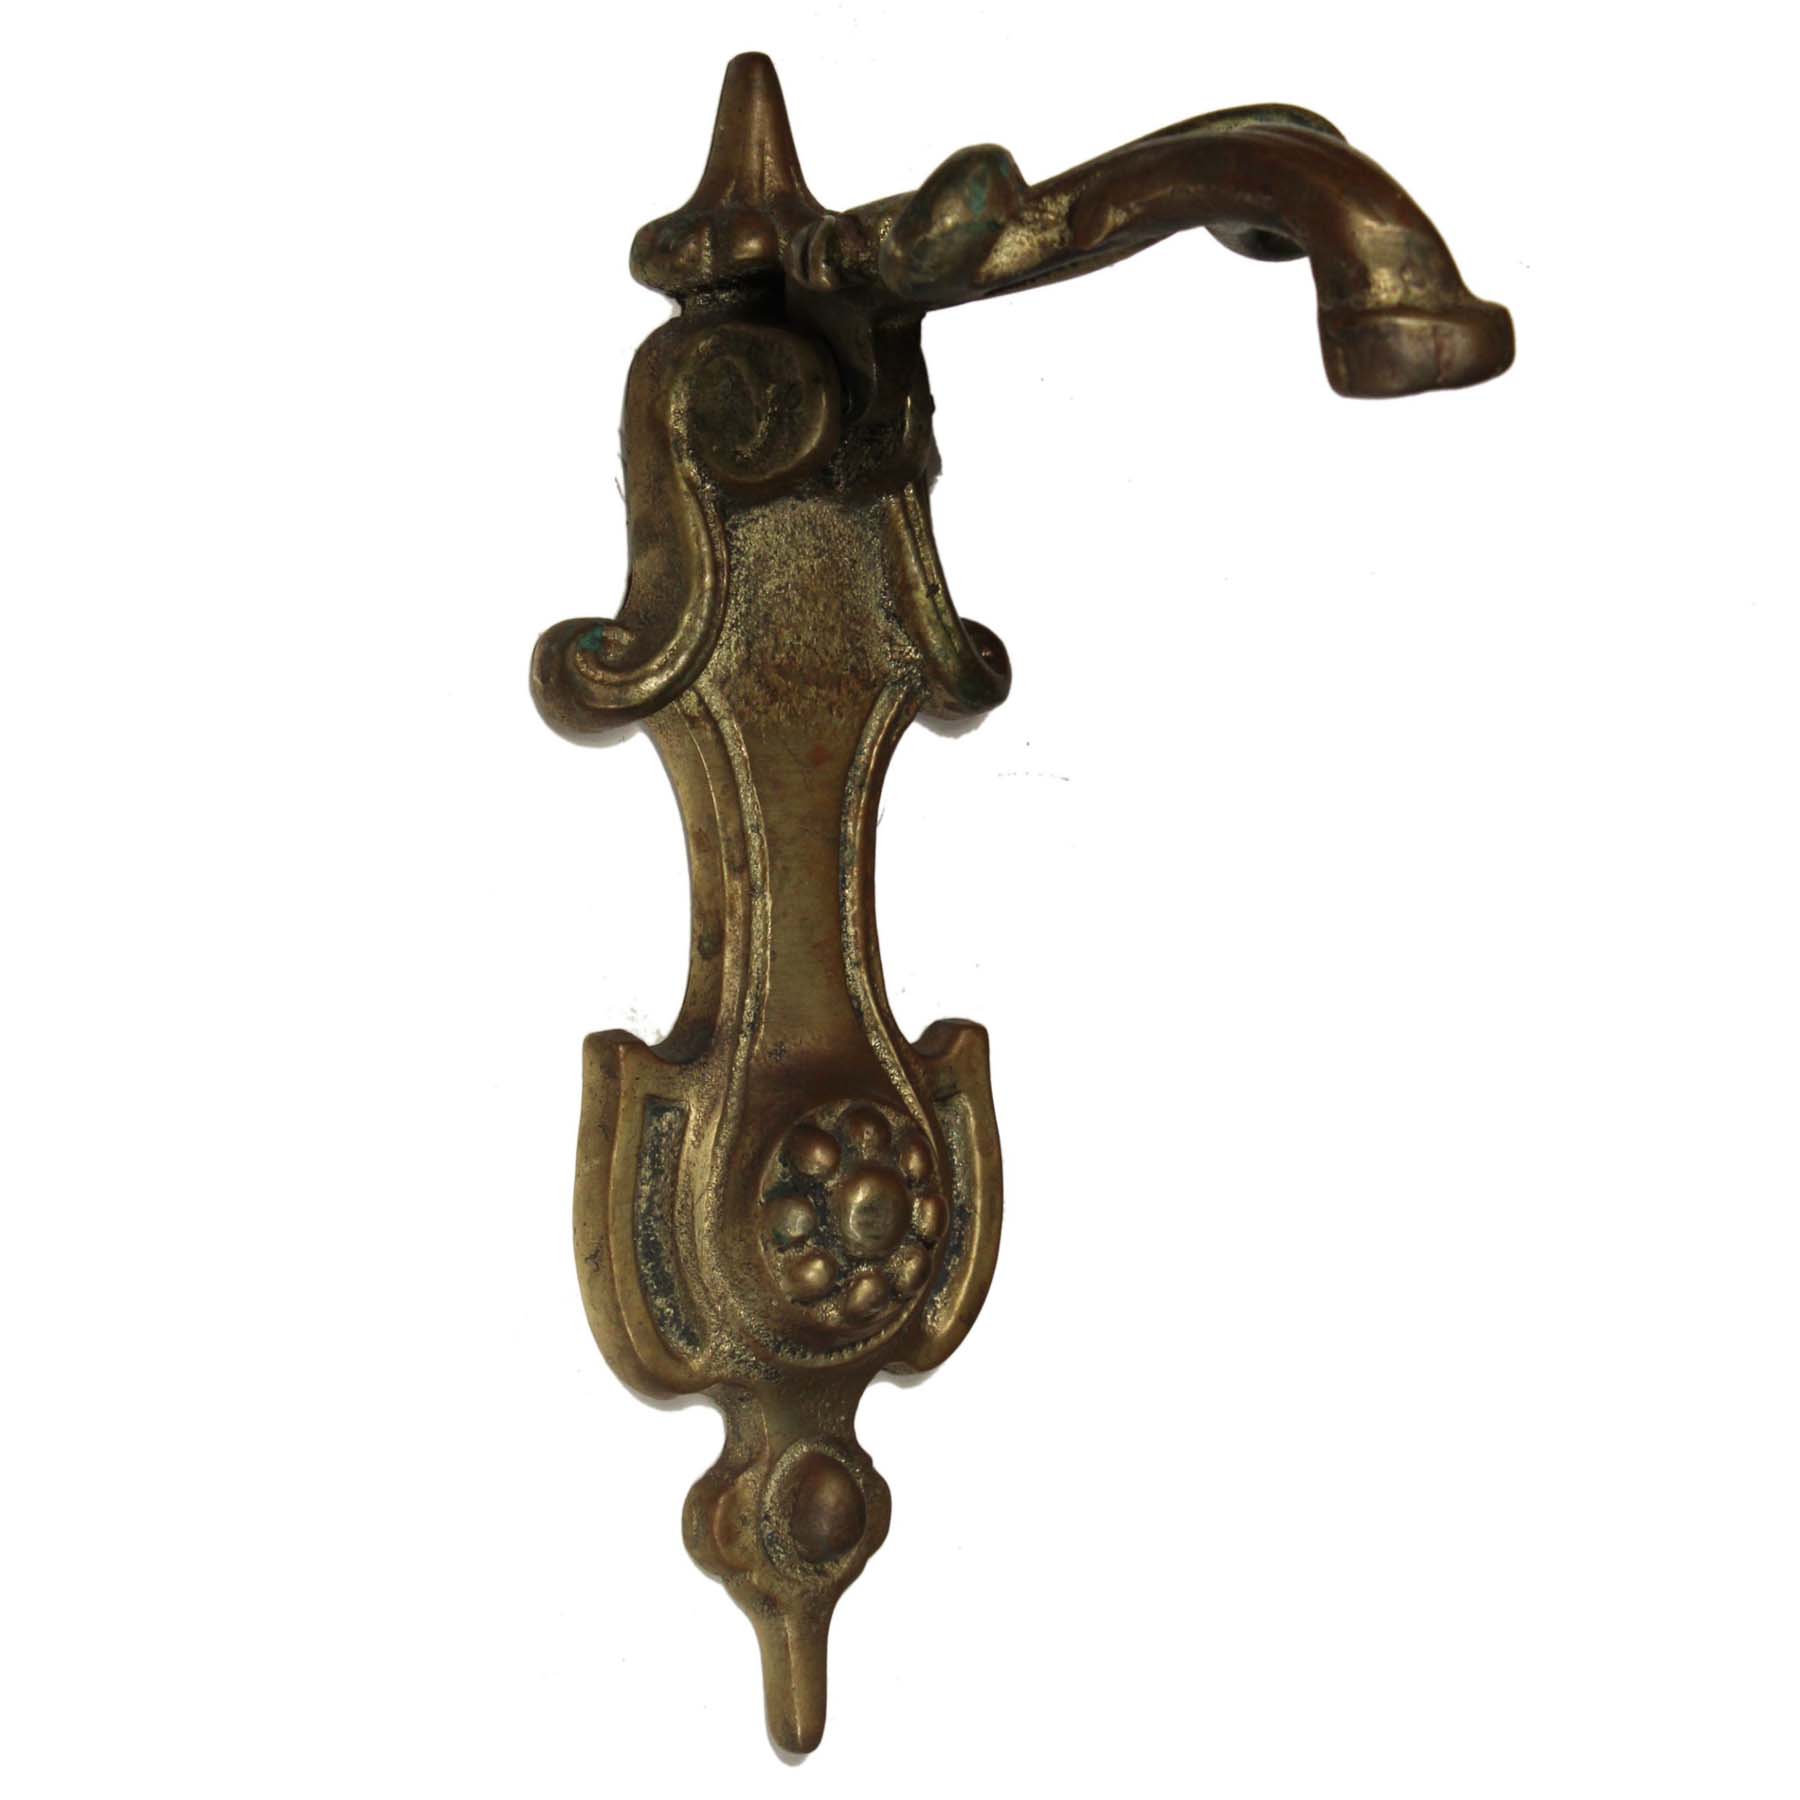 SOLD Vintage Cast Brass Door Knocker, Art Nouveau -69883